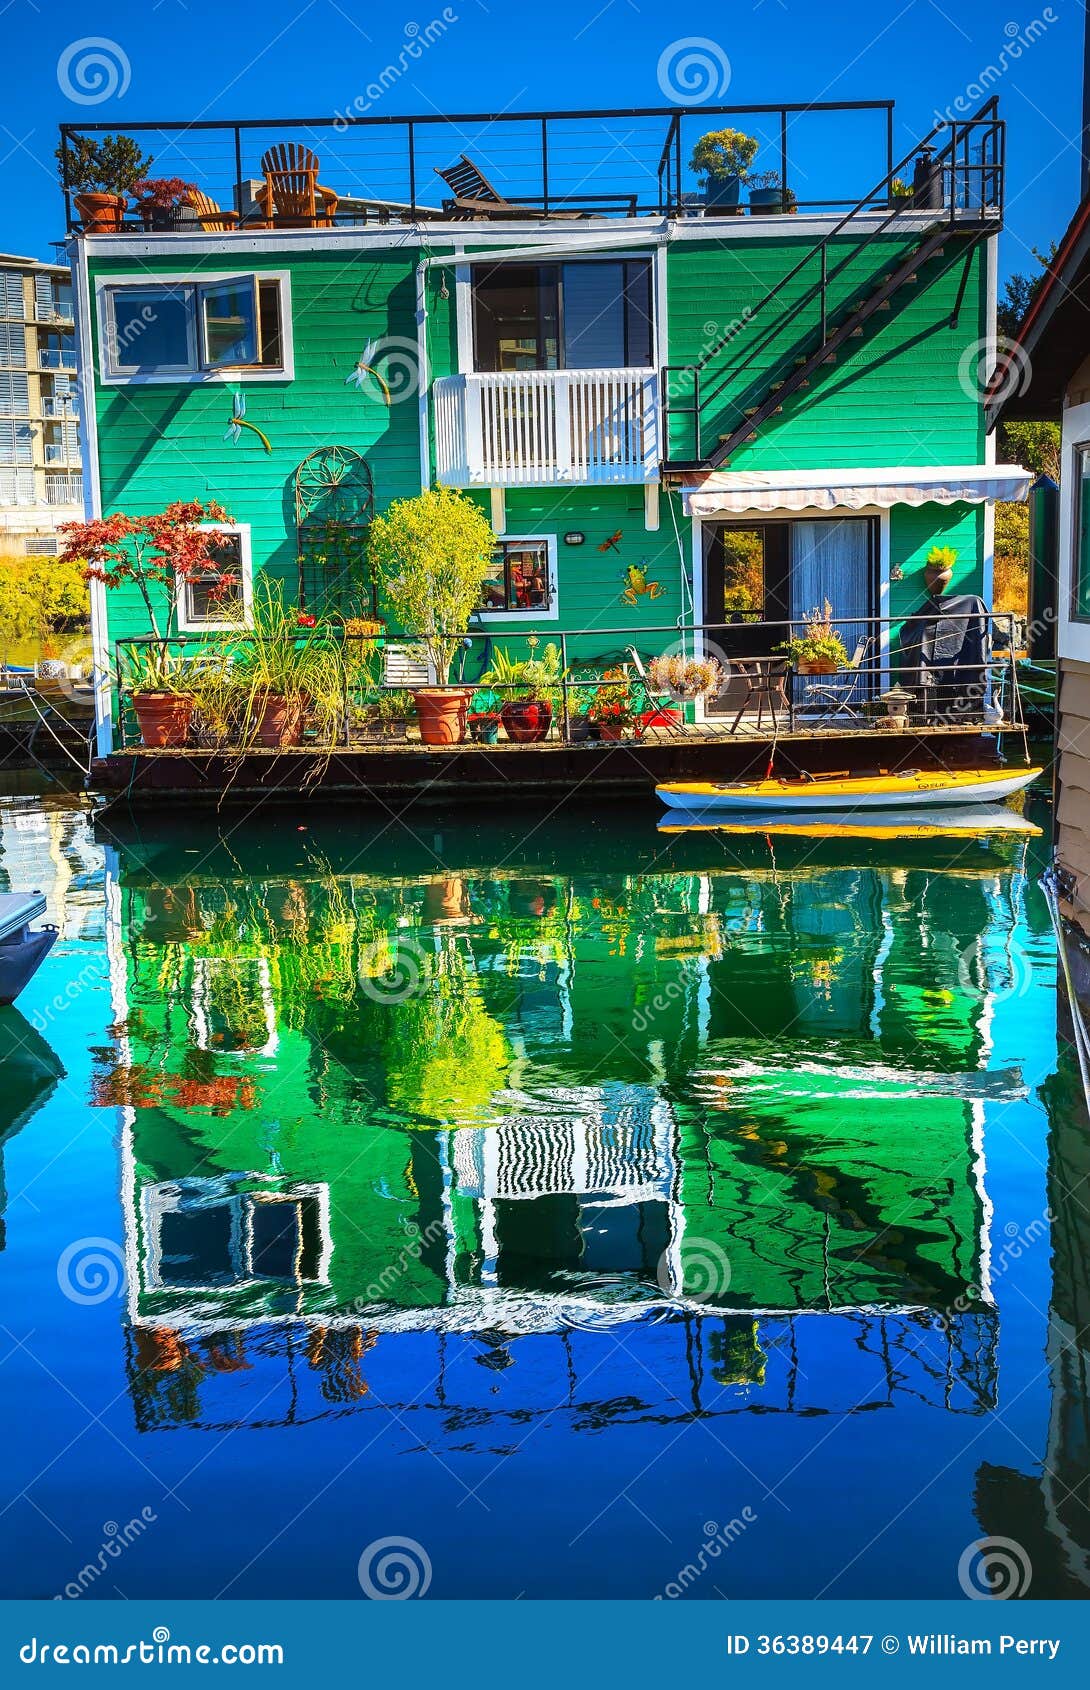 waterwoody houseboat